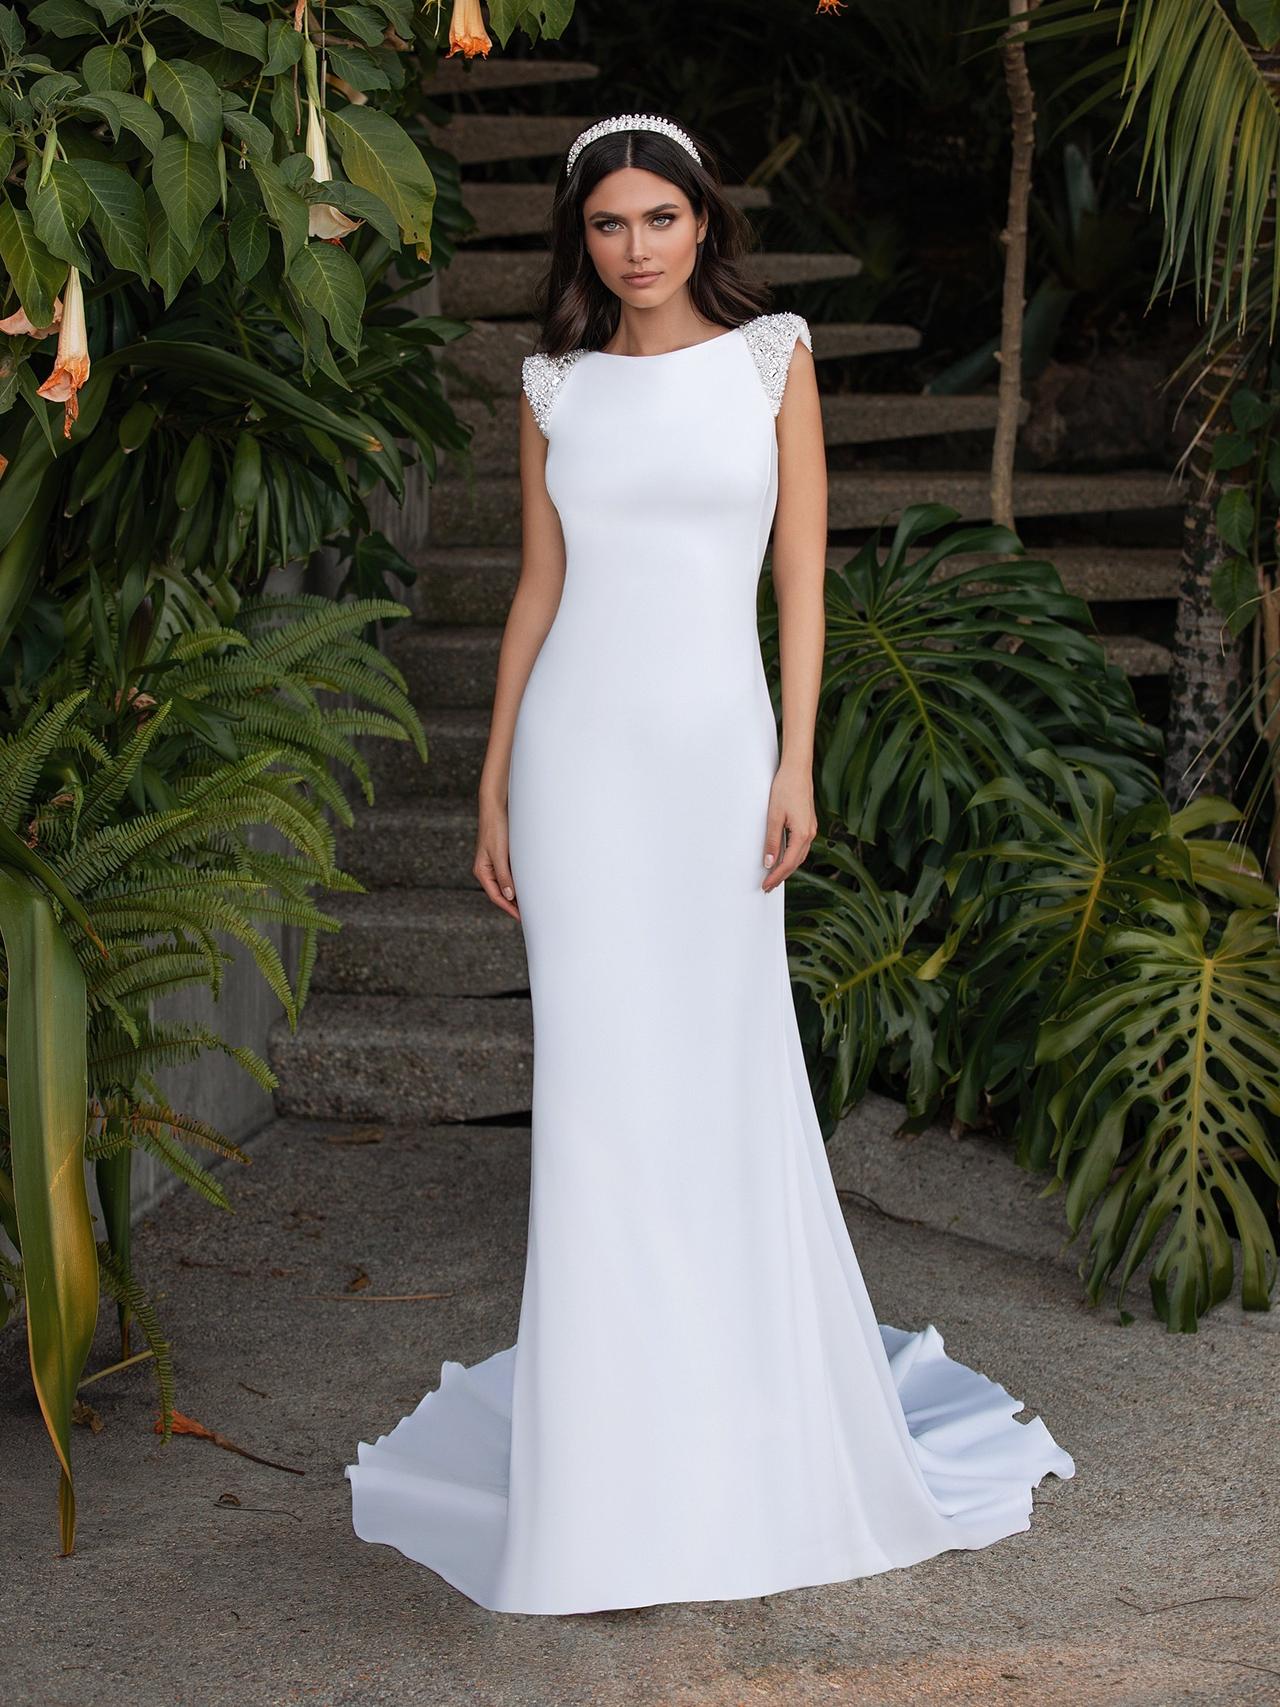 35 vestidos que te harán parecer más delgada en tu boda